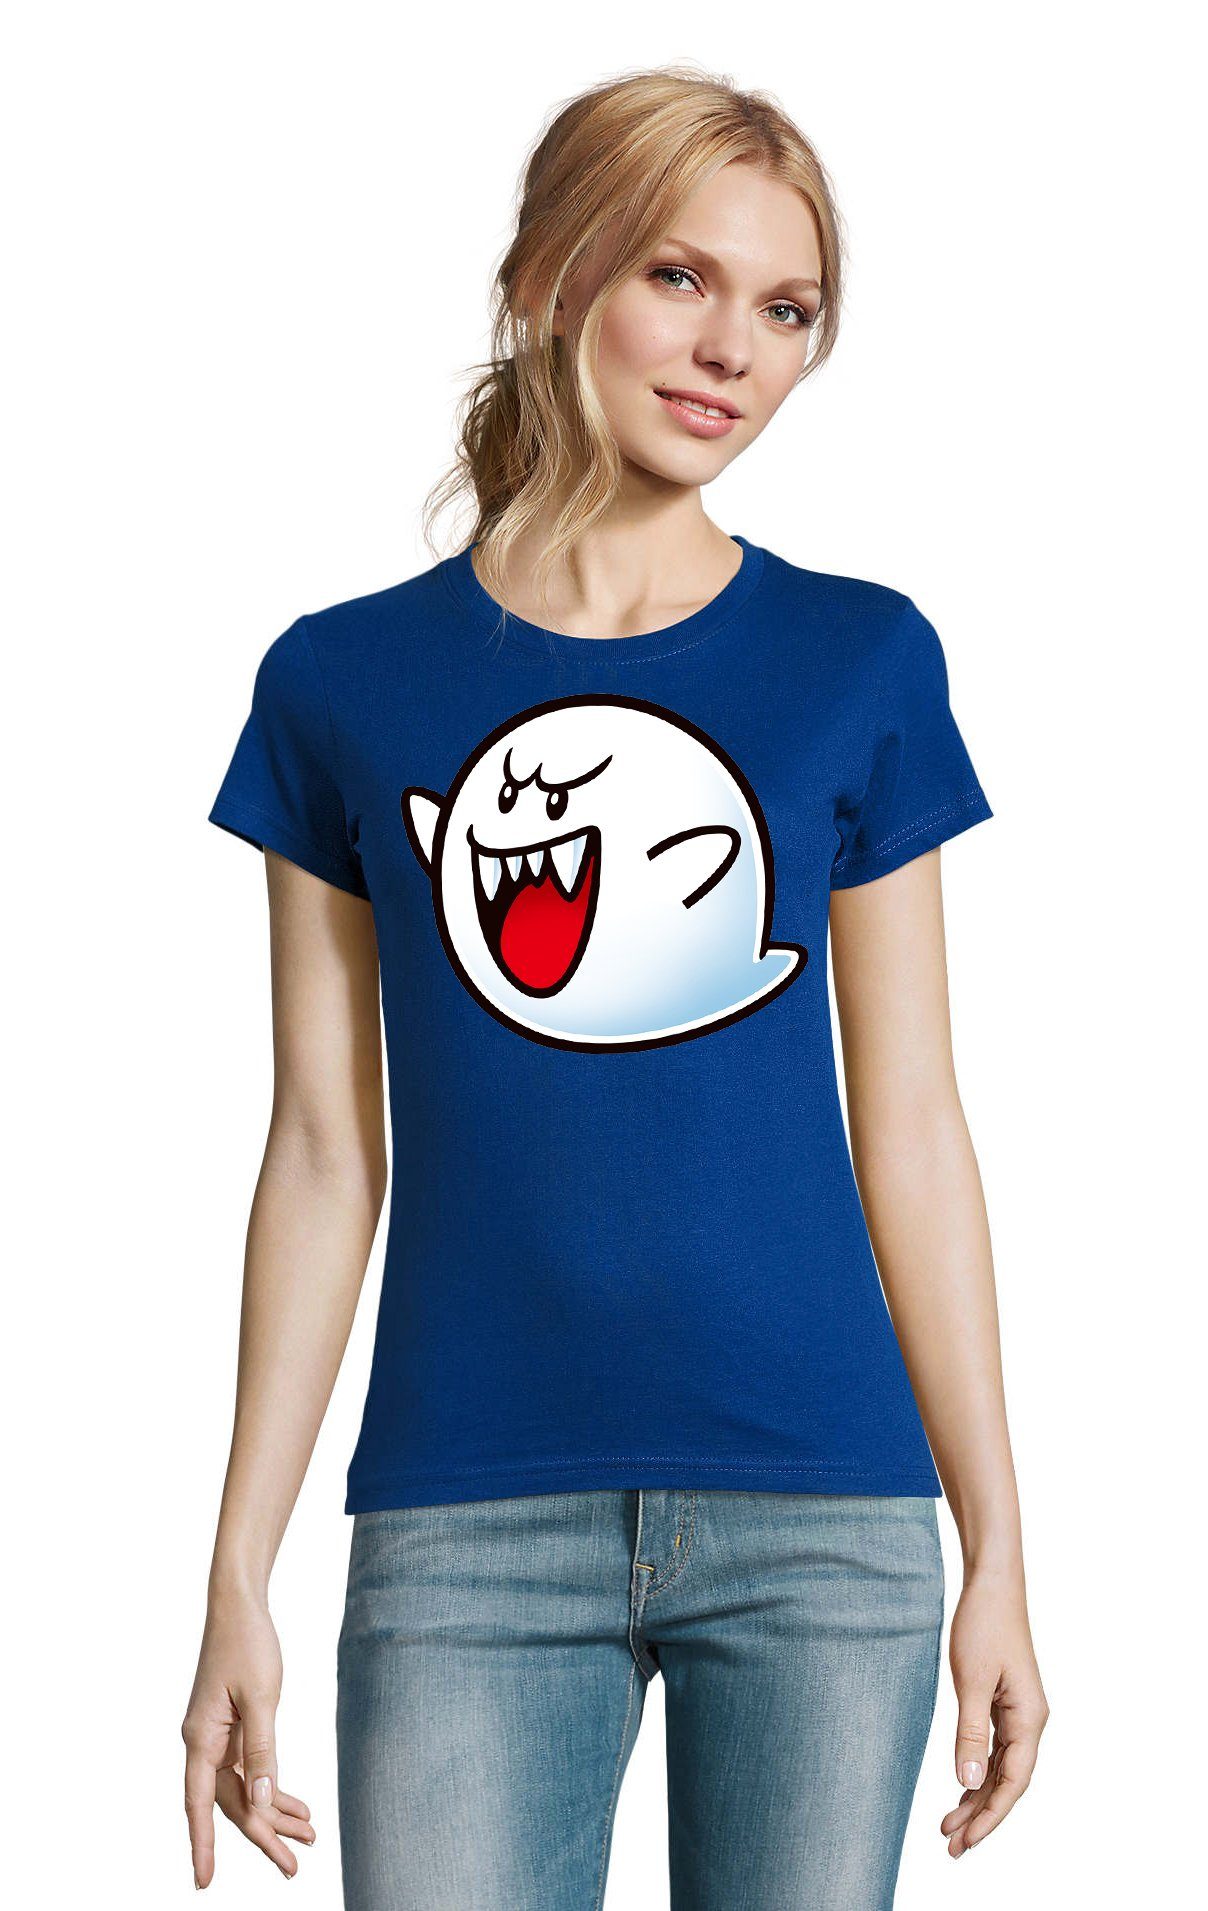 Blau Geist Brownie Nintendo Super Konsole T-Shirt Gespenst Mario Boo Damen & Blondie